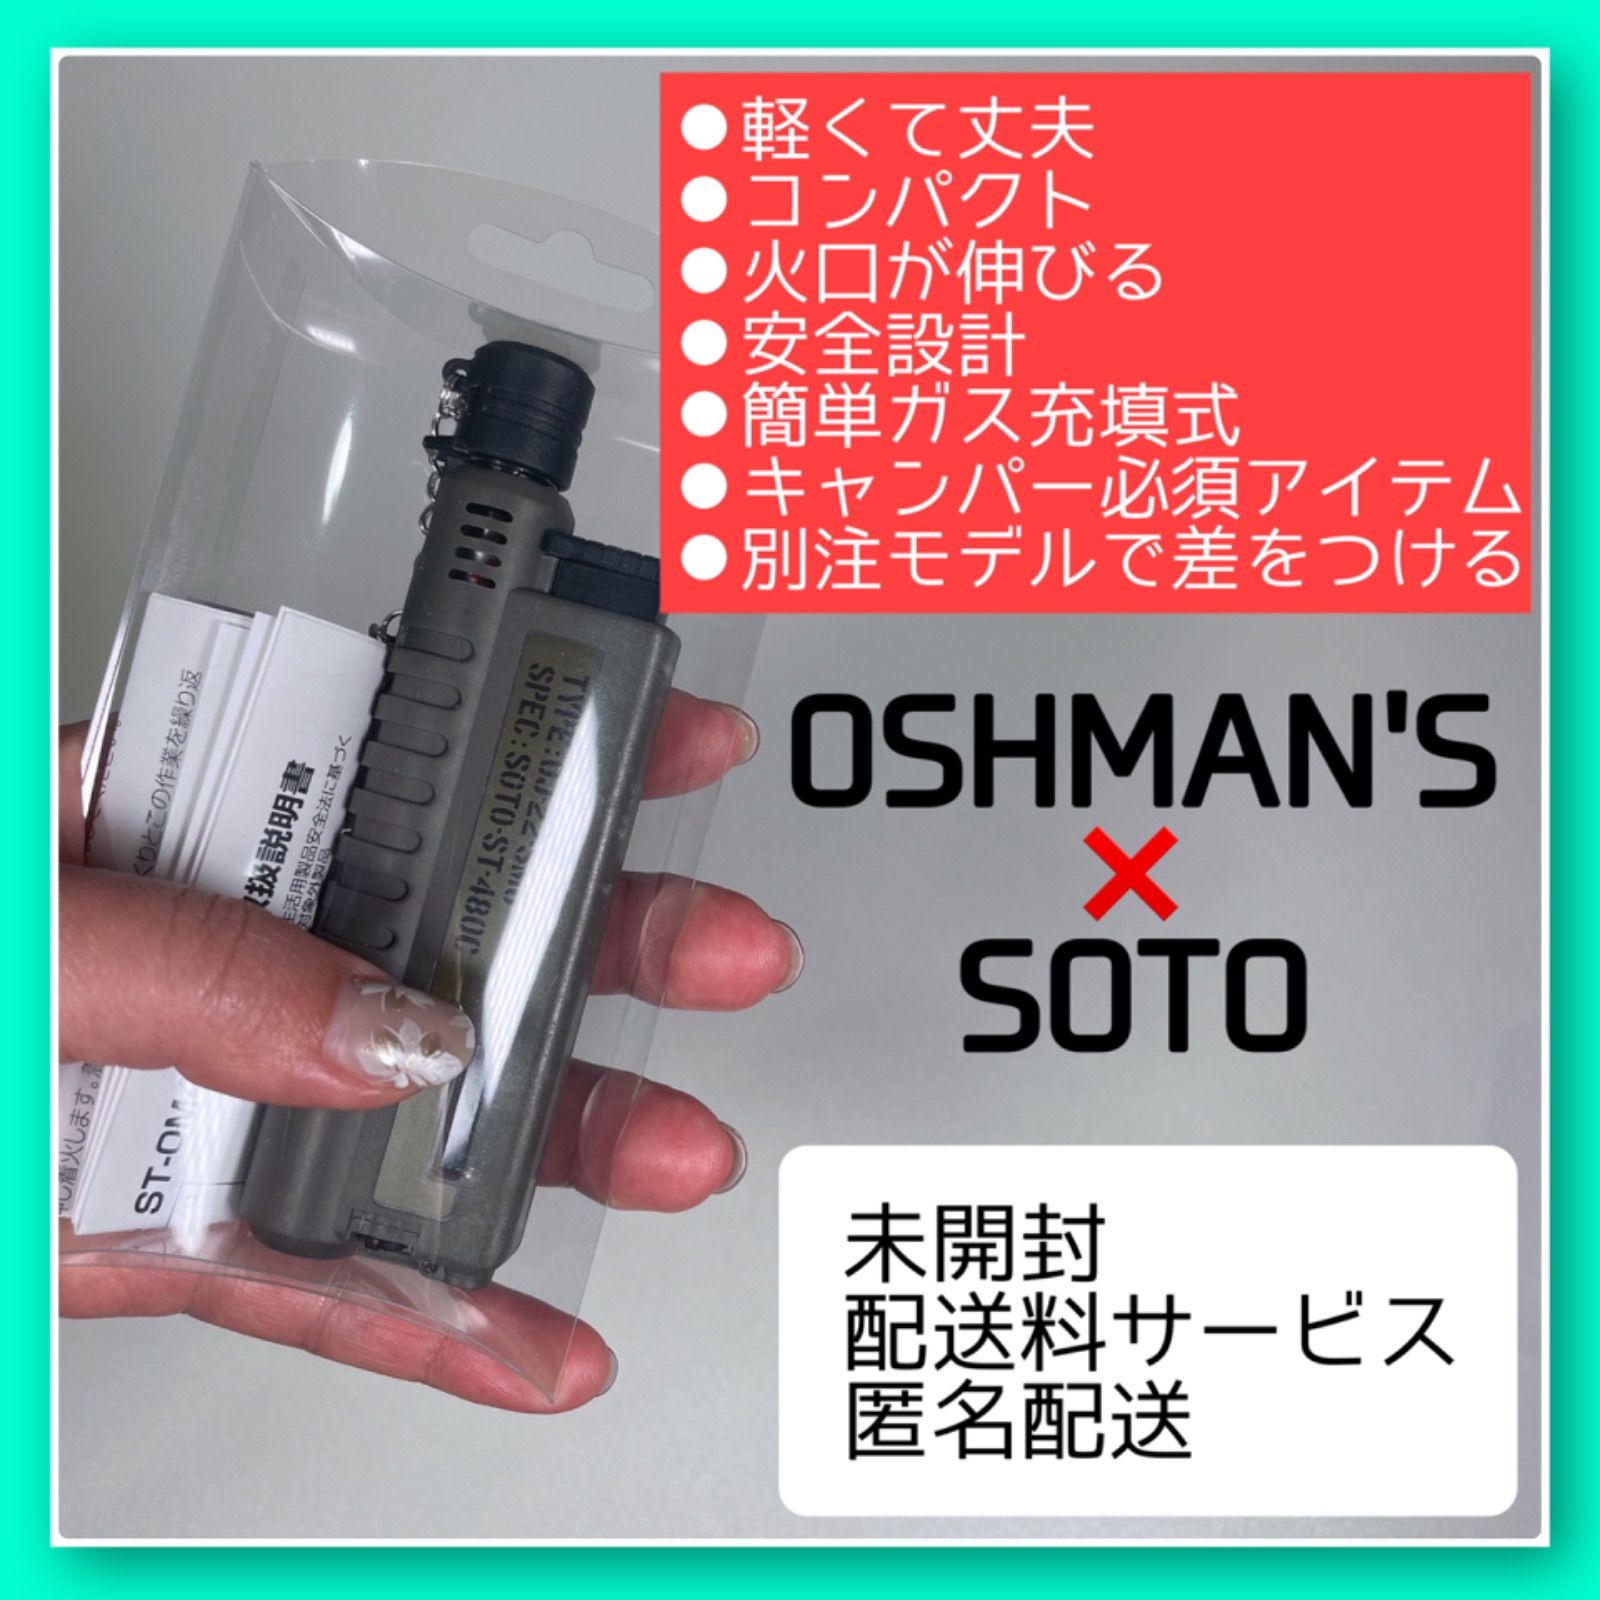 限定【OSHMAN'S 別注モデル】SOTO ガストーチ キャンプマストアイテム 